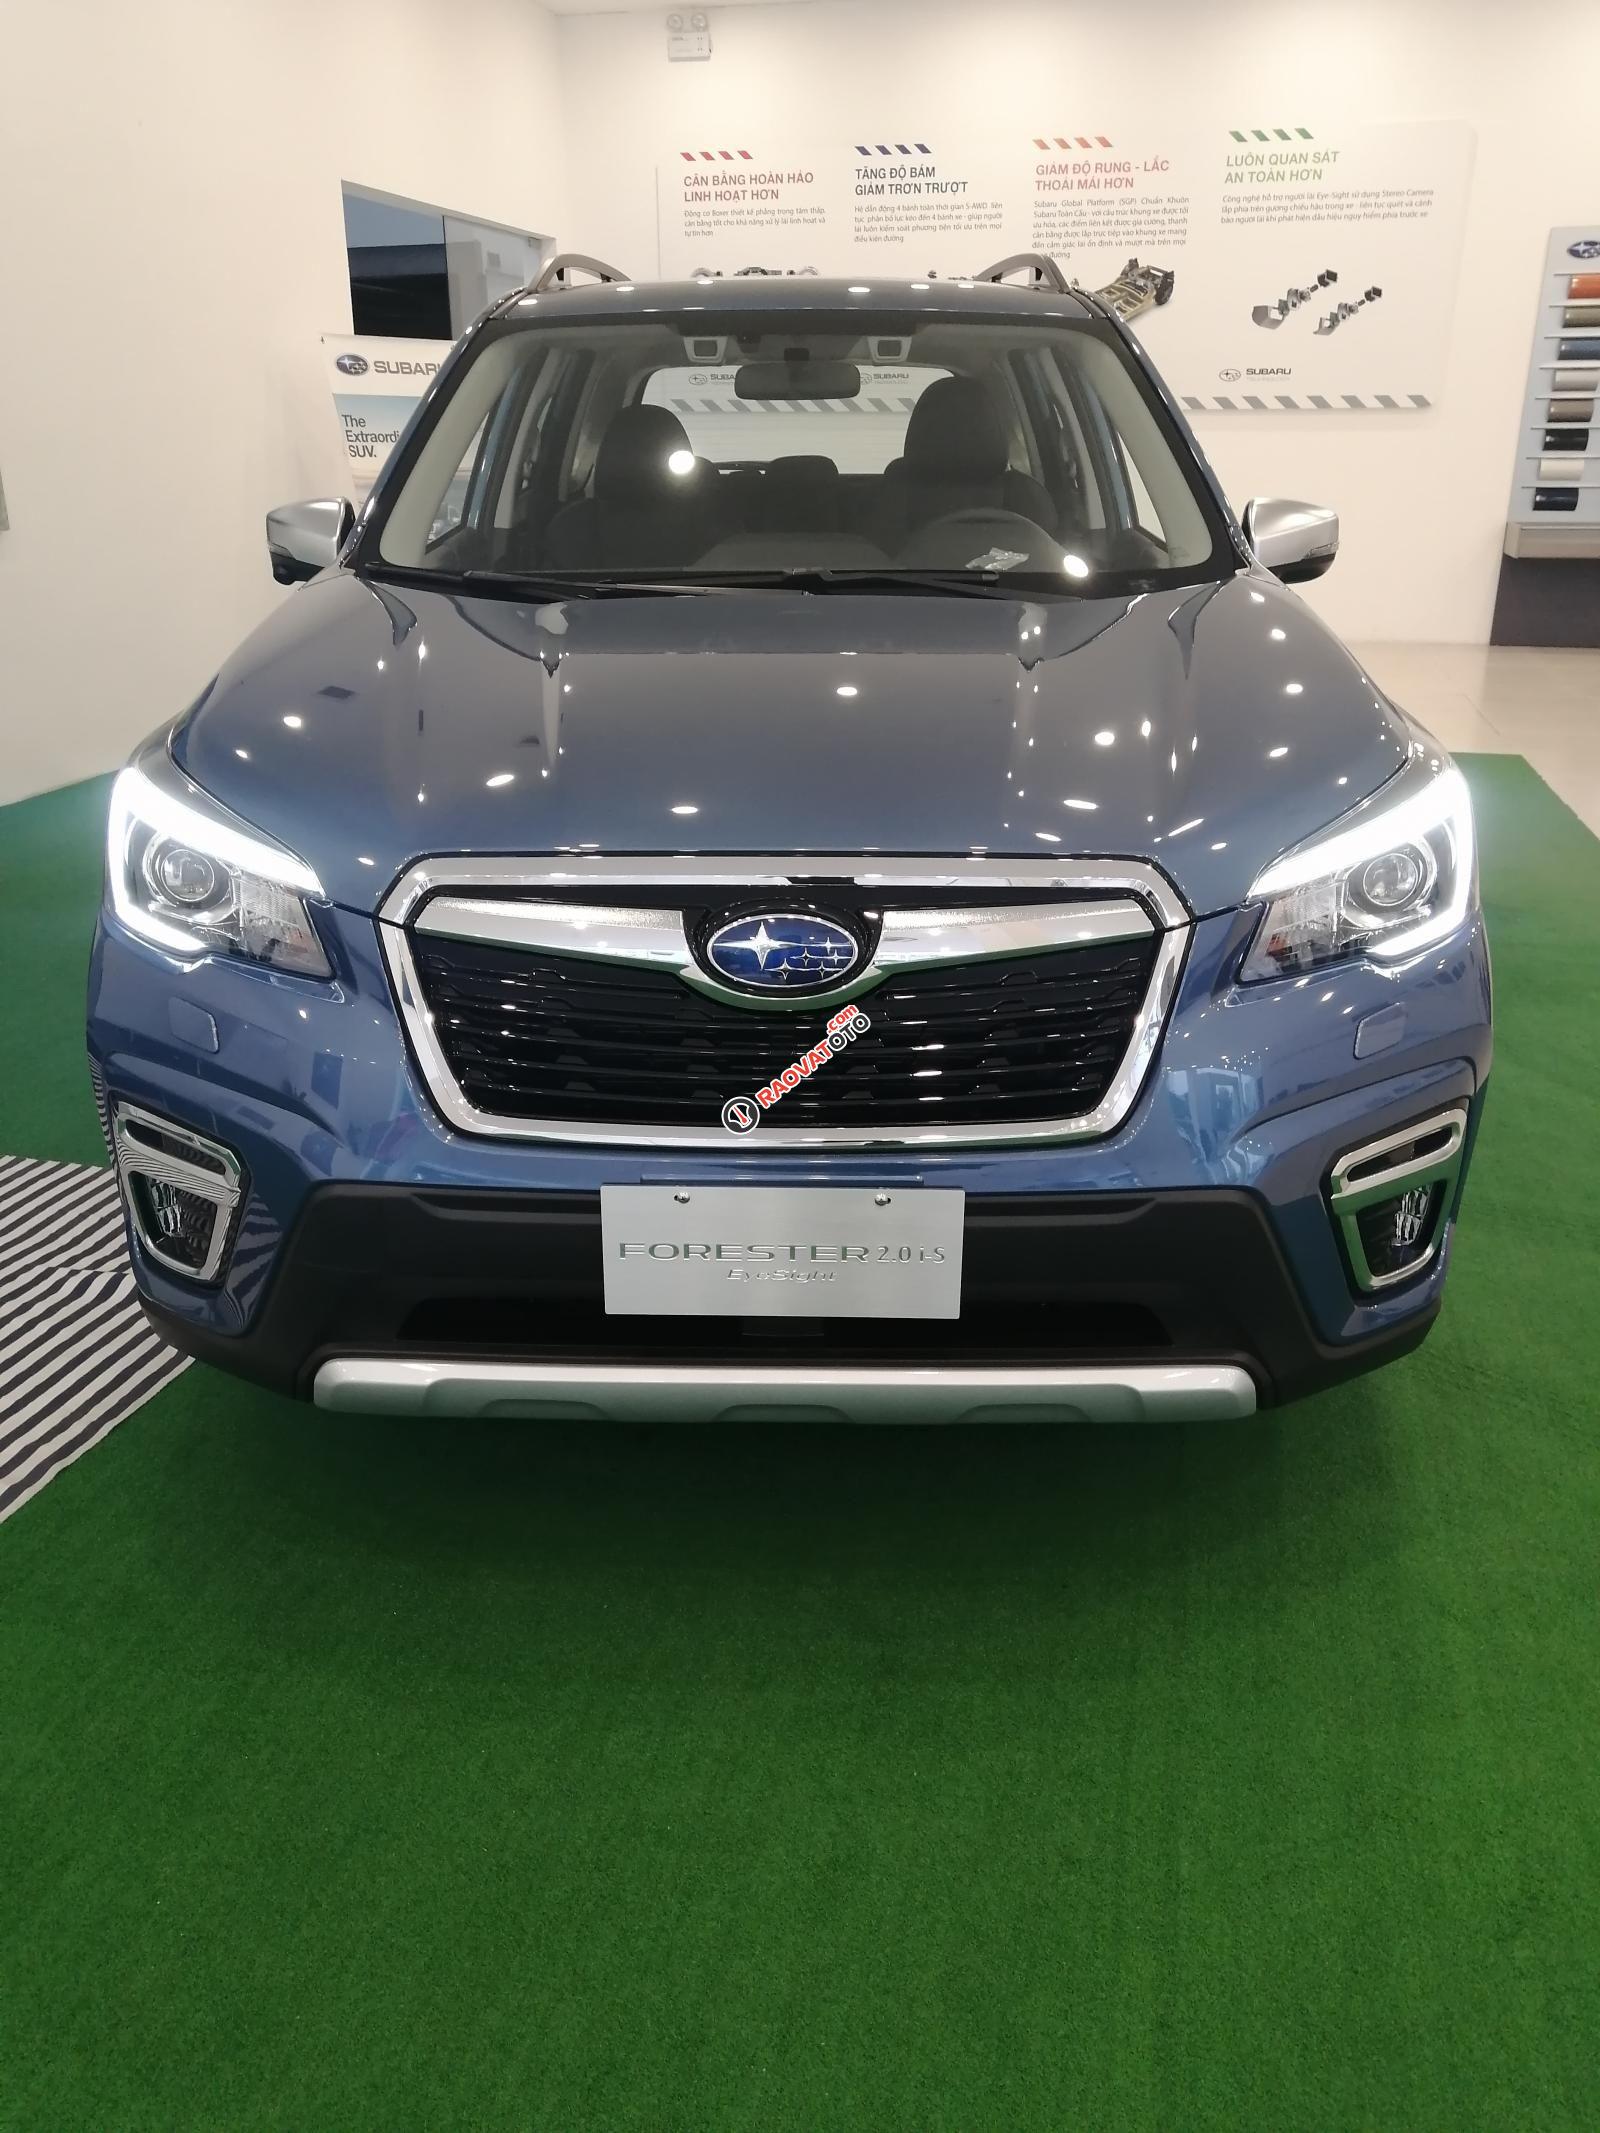 Mua xe giá hời - Đến ngay Subaru Hà Nội: Phiên bản Forester 2.0i-S đời 2020, màu xanh lục-0